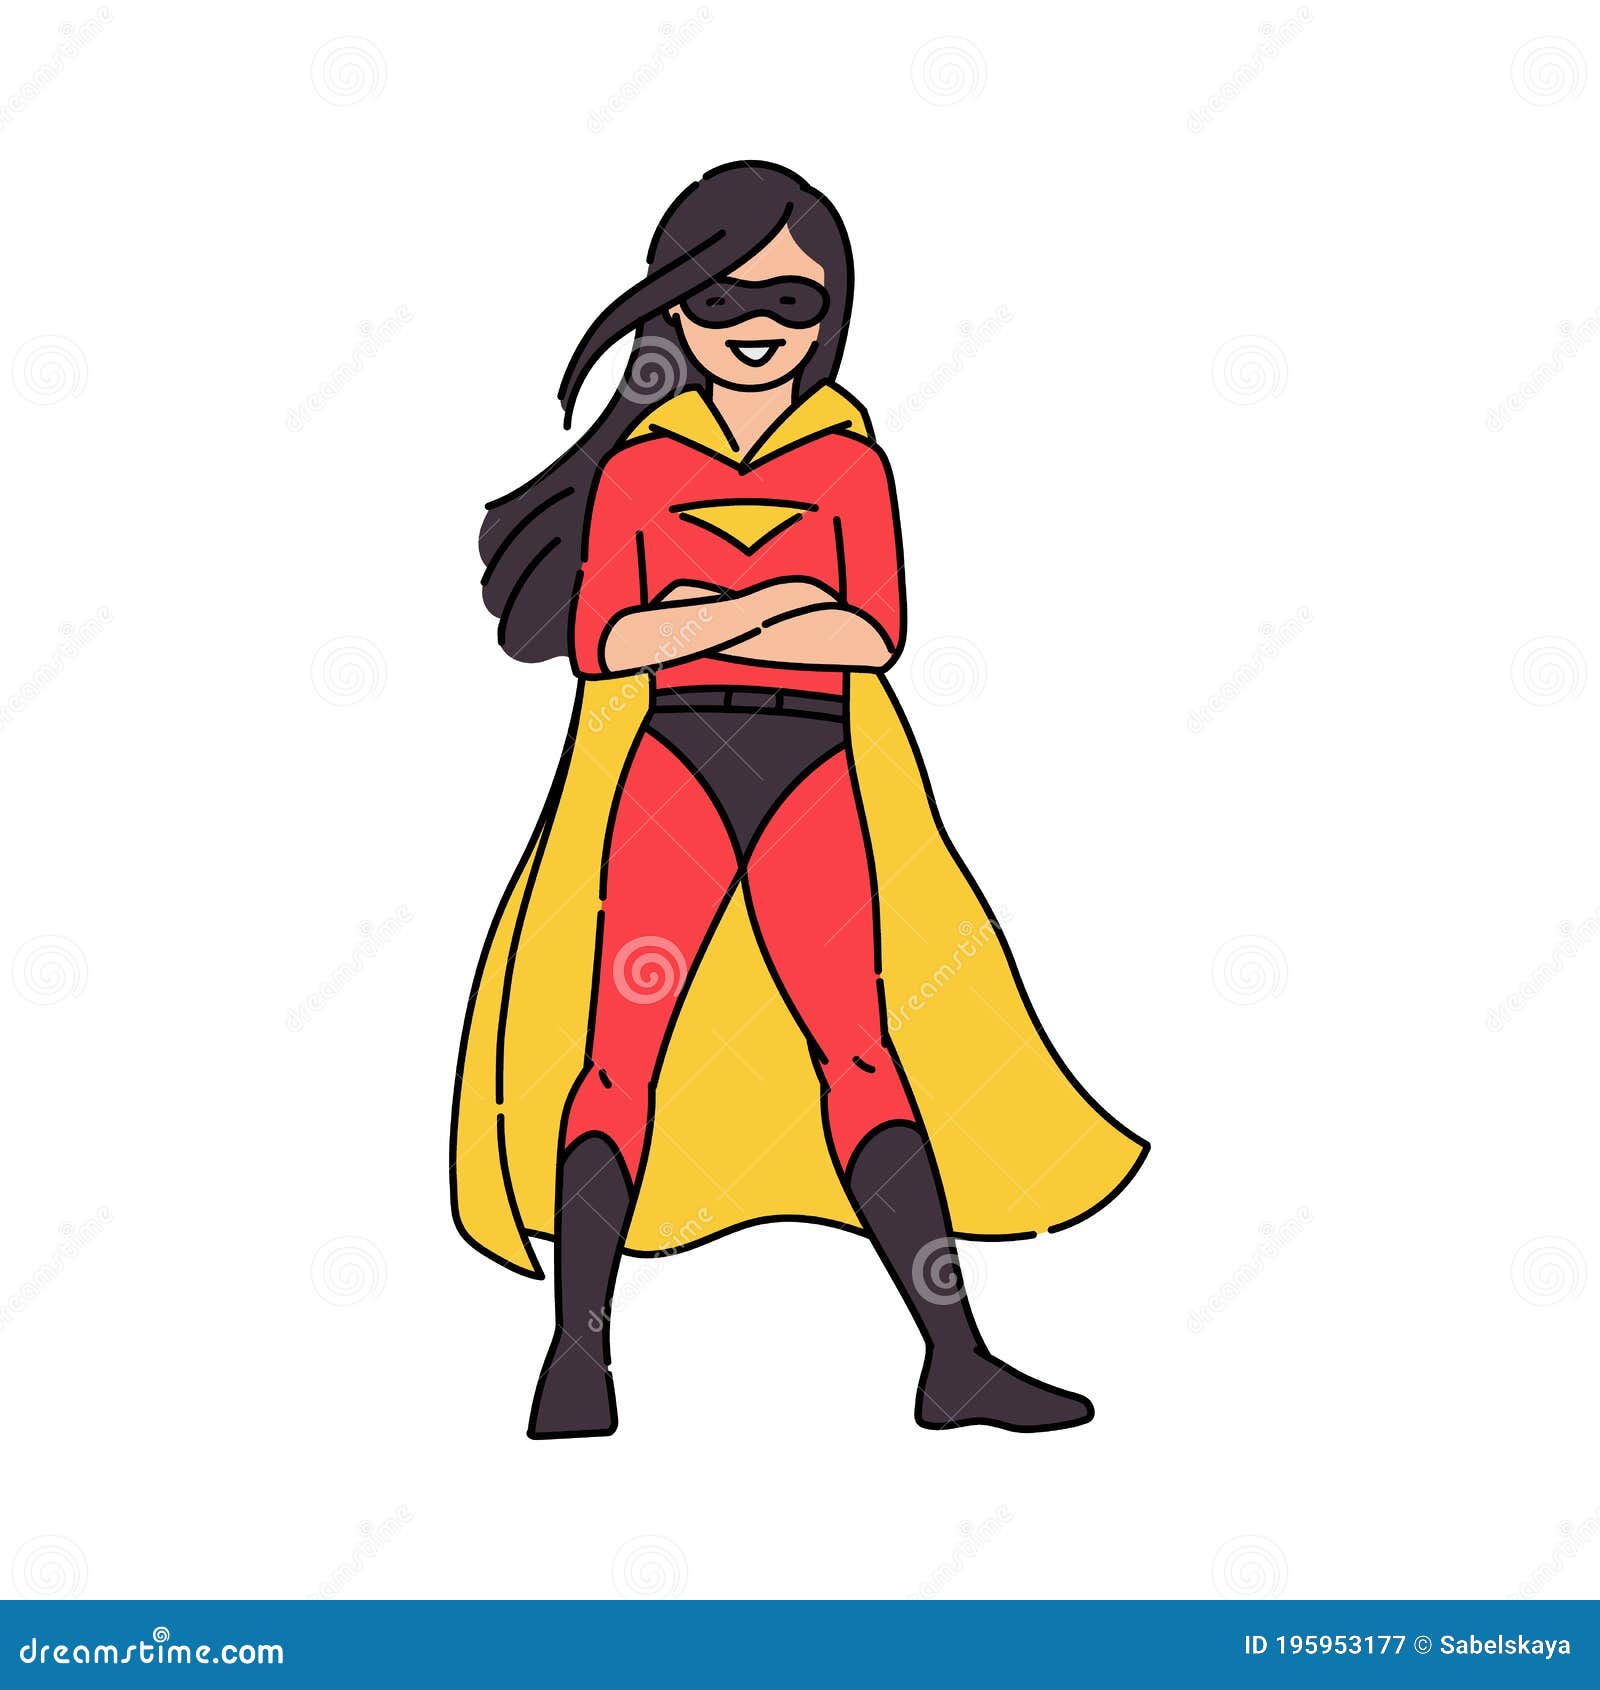 Superhero stock vector. Illustration of girl, outline - 45690830